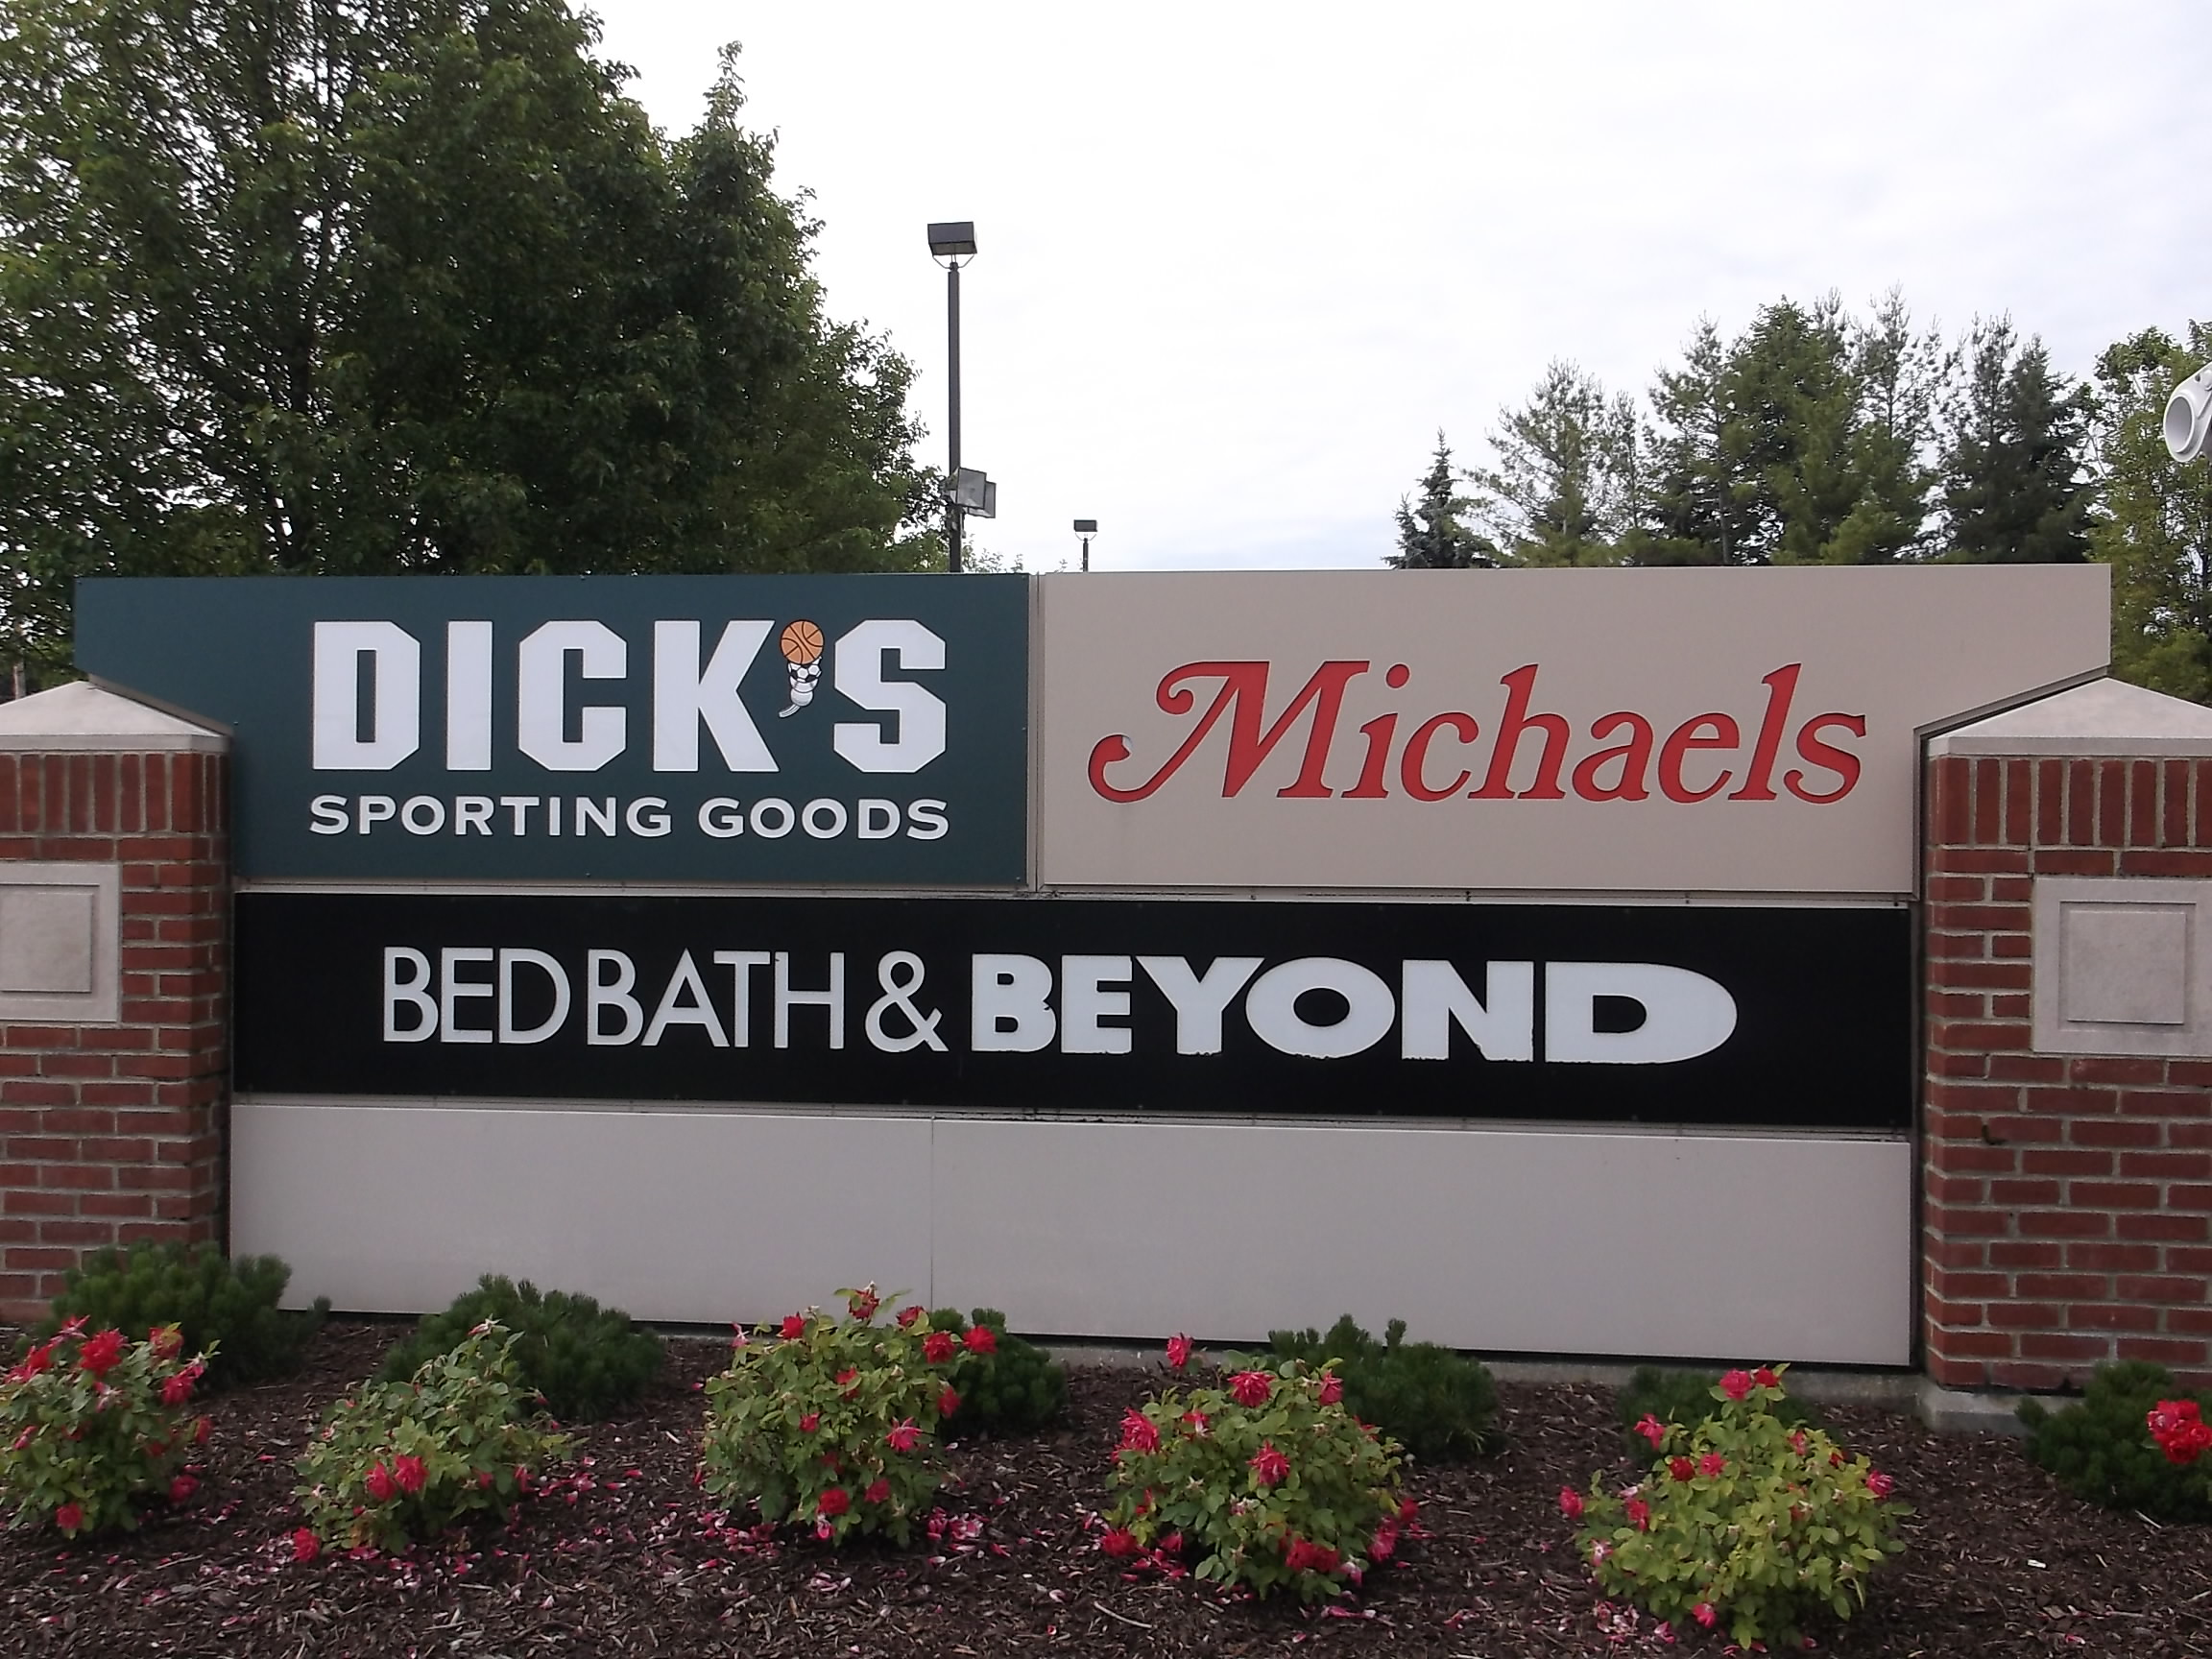 Shopping Center Pillar Monument "michaels" "dicks sporting goods" "bedbath&beyond" router cut logo panels